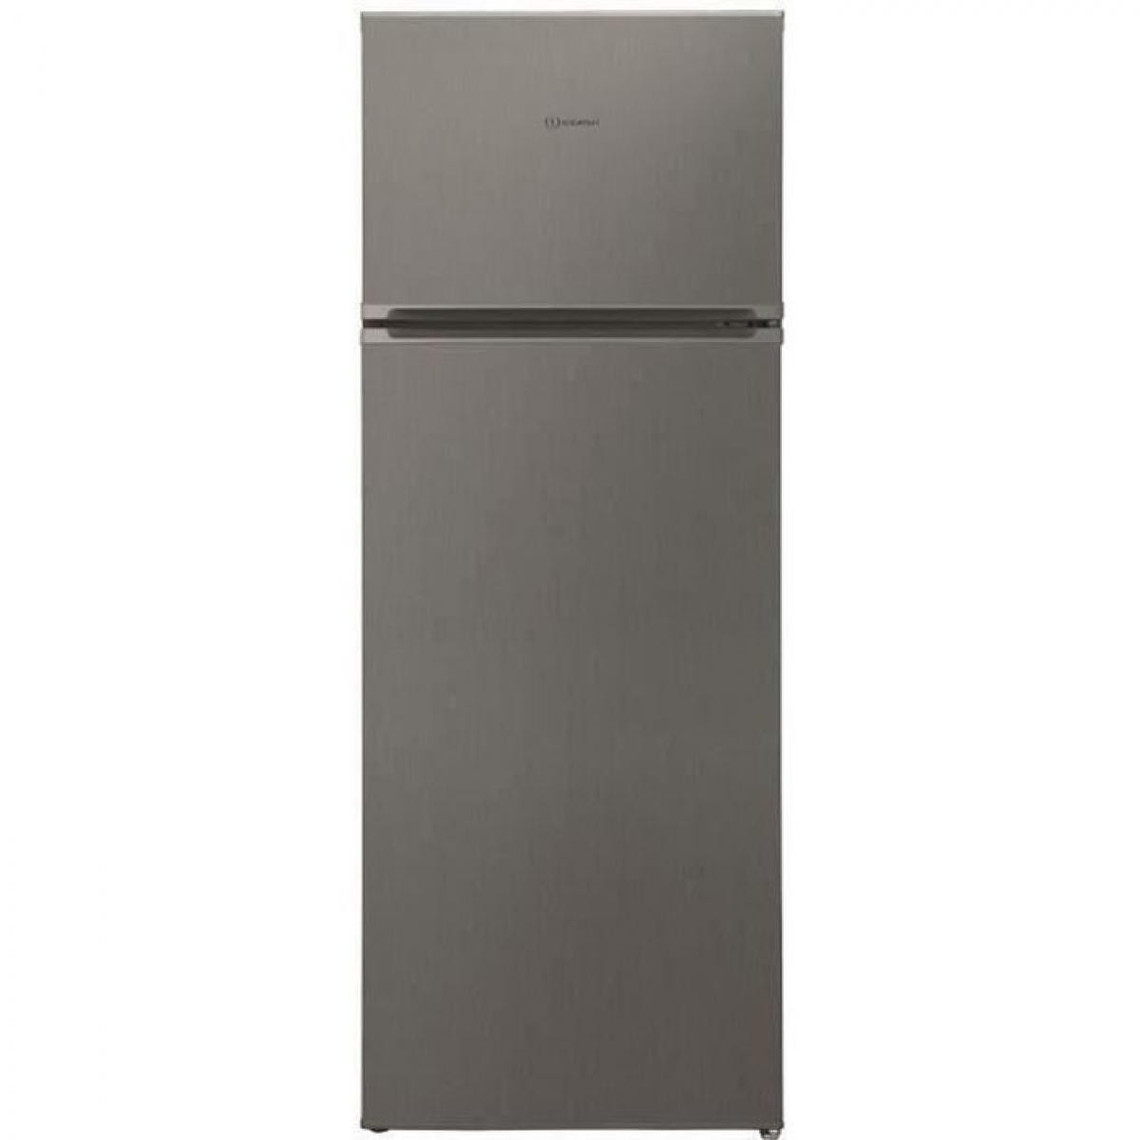 Indesit INDESIT I55TM4110X1 - Réfrigérateur congélateur haut - 213L (171 + 42) - Froid Statique - L 54 cm x H 144 cm - Inox